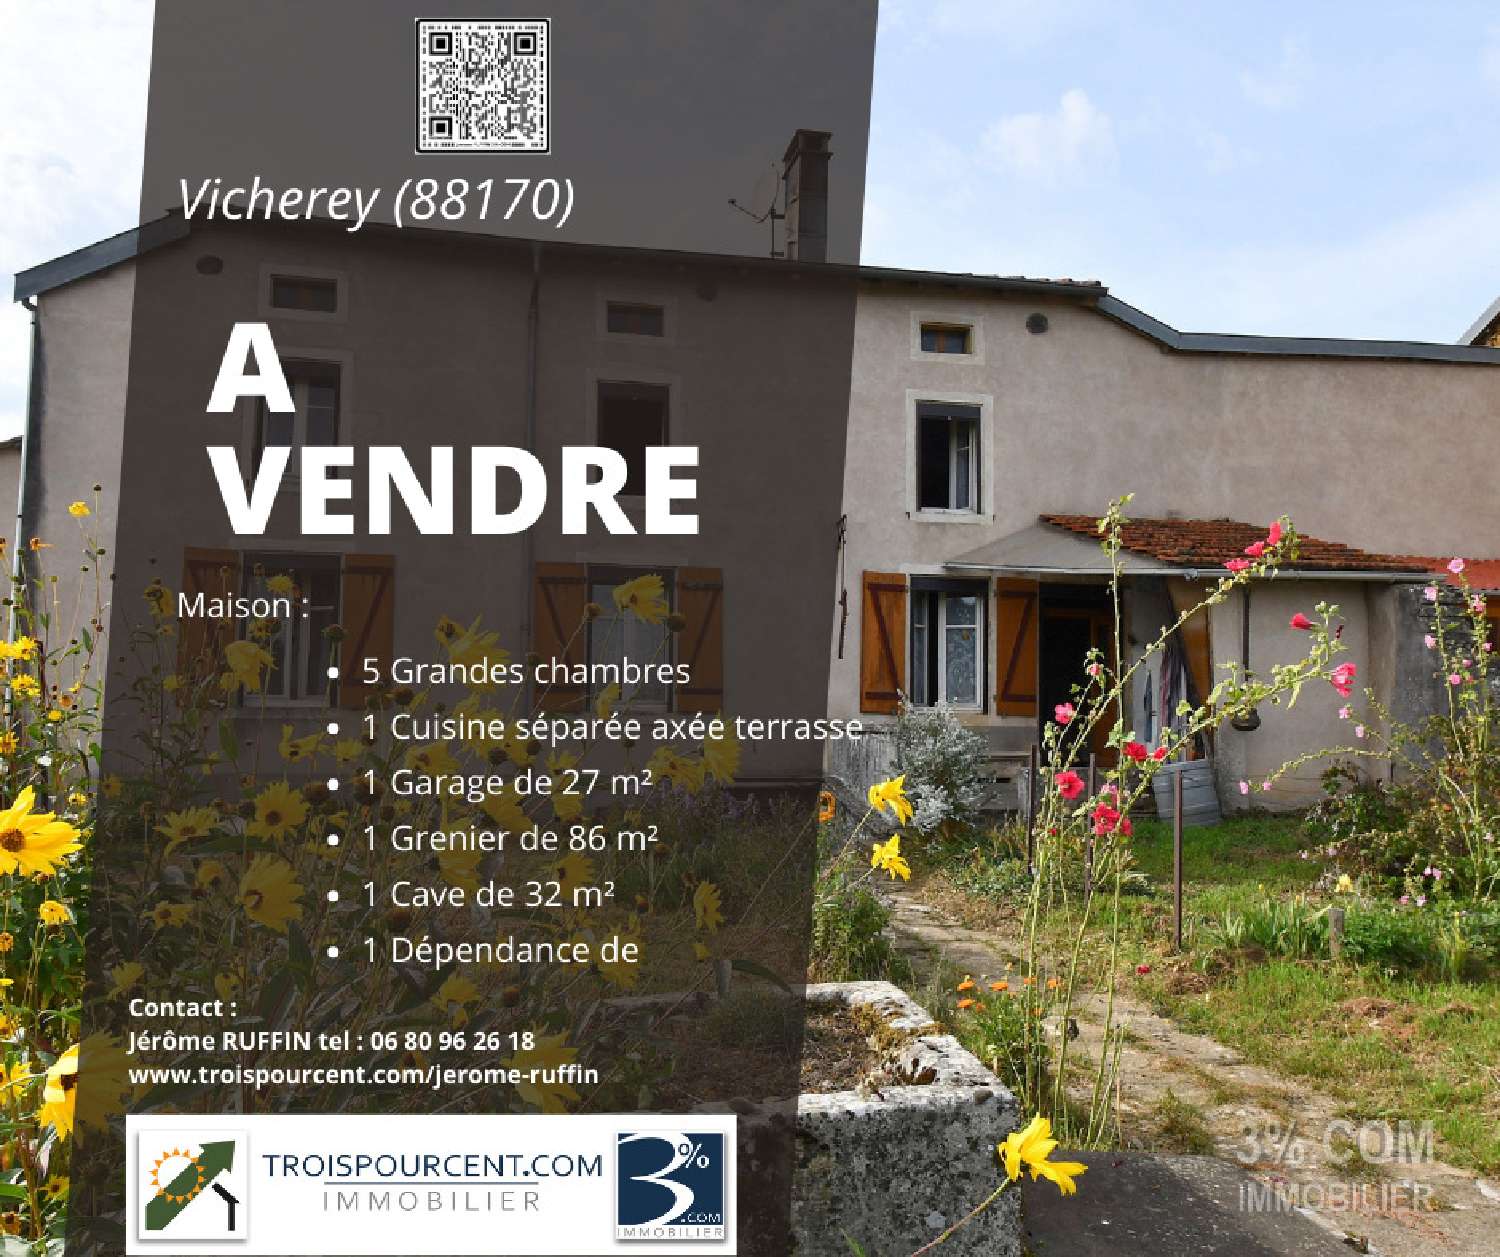  à vendre maison de village Vicherey Vosges 1